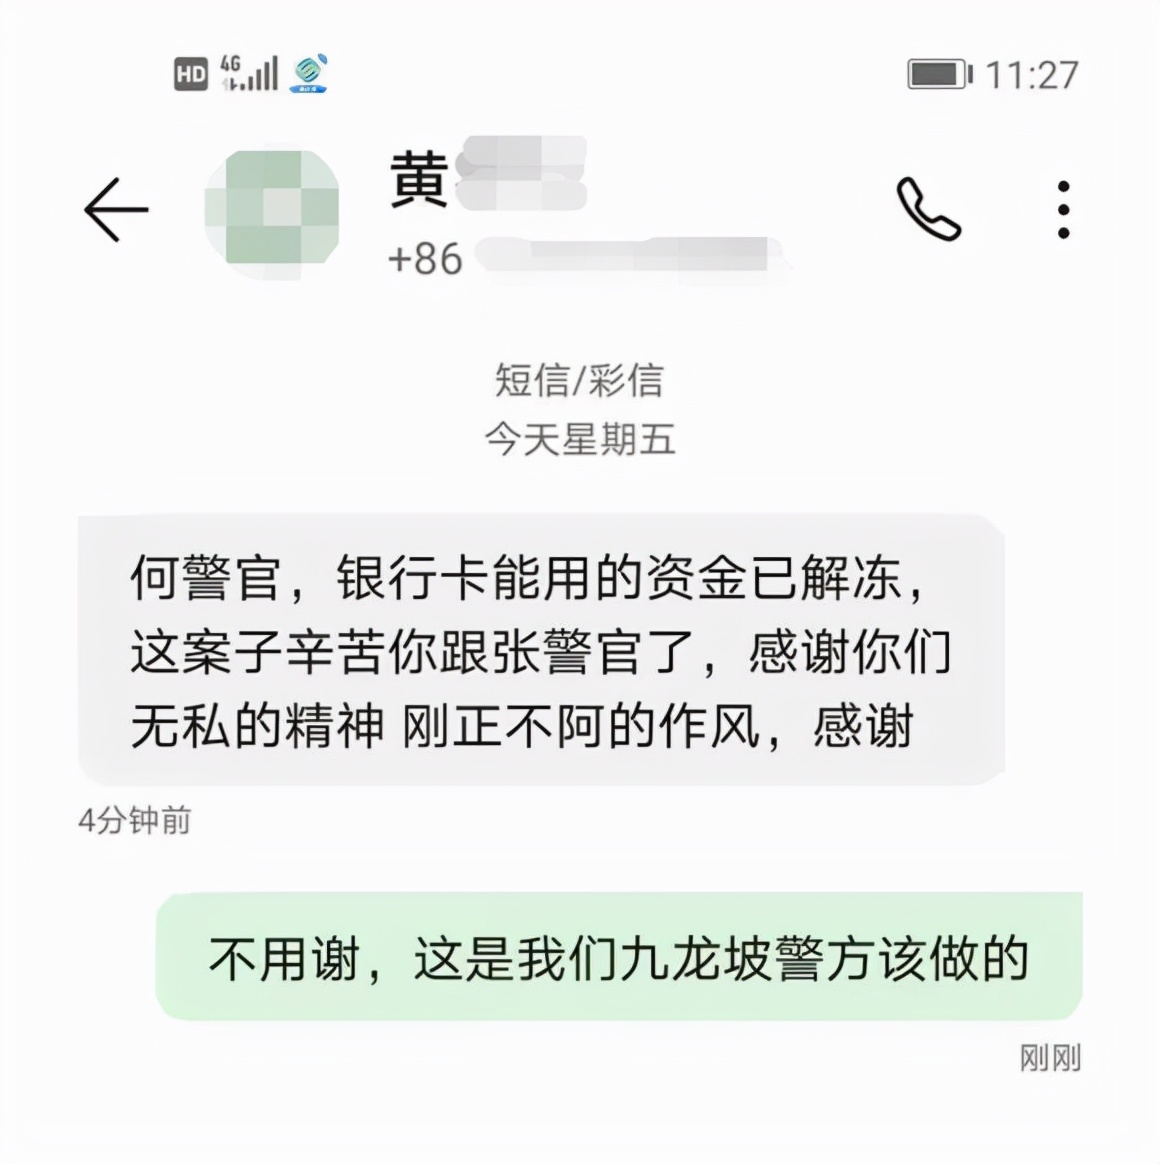 女子近11万元货款被冻结 她却给重庆民警发来短信感谢